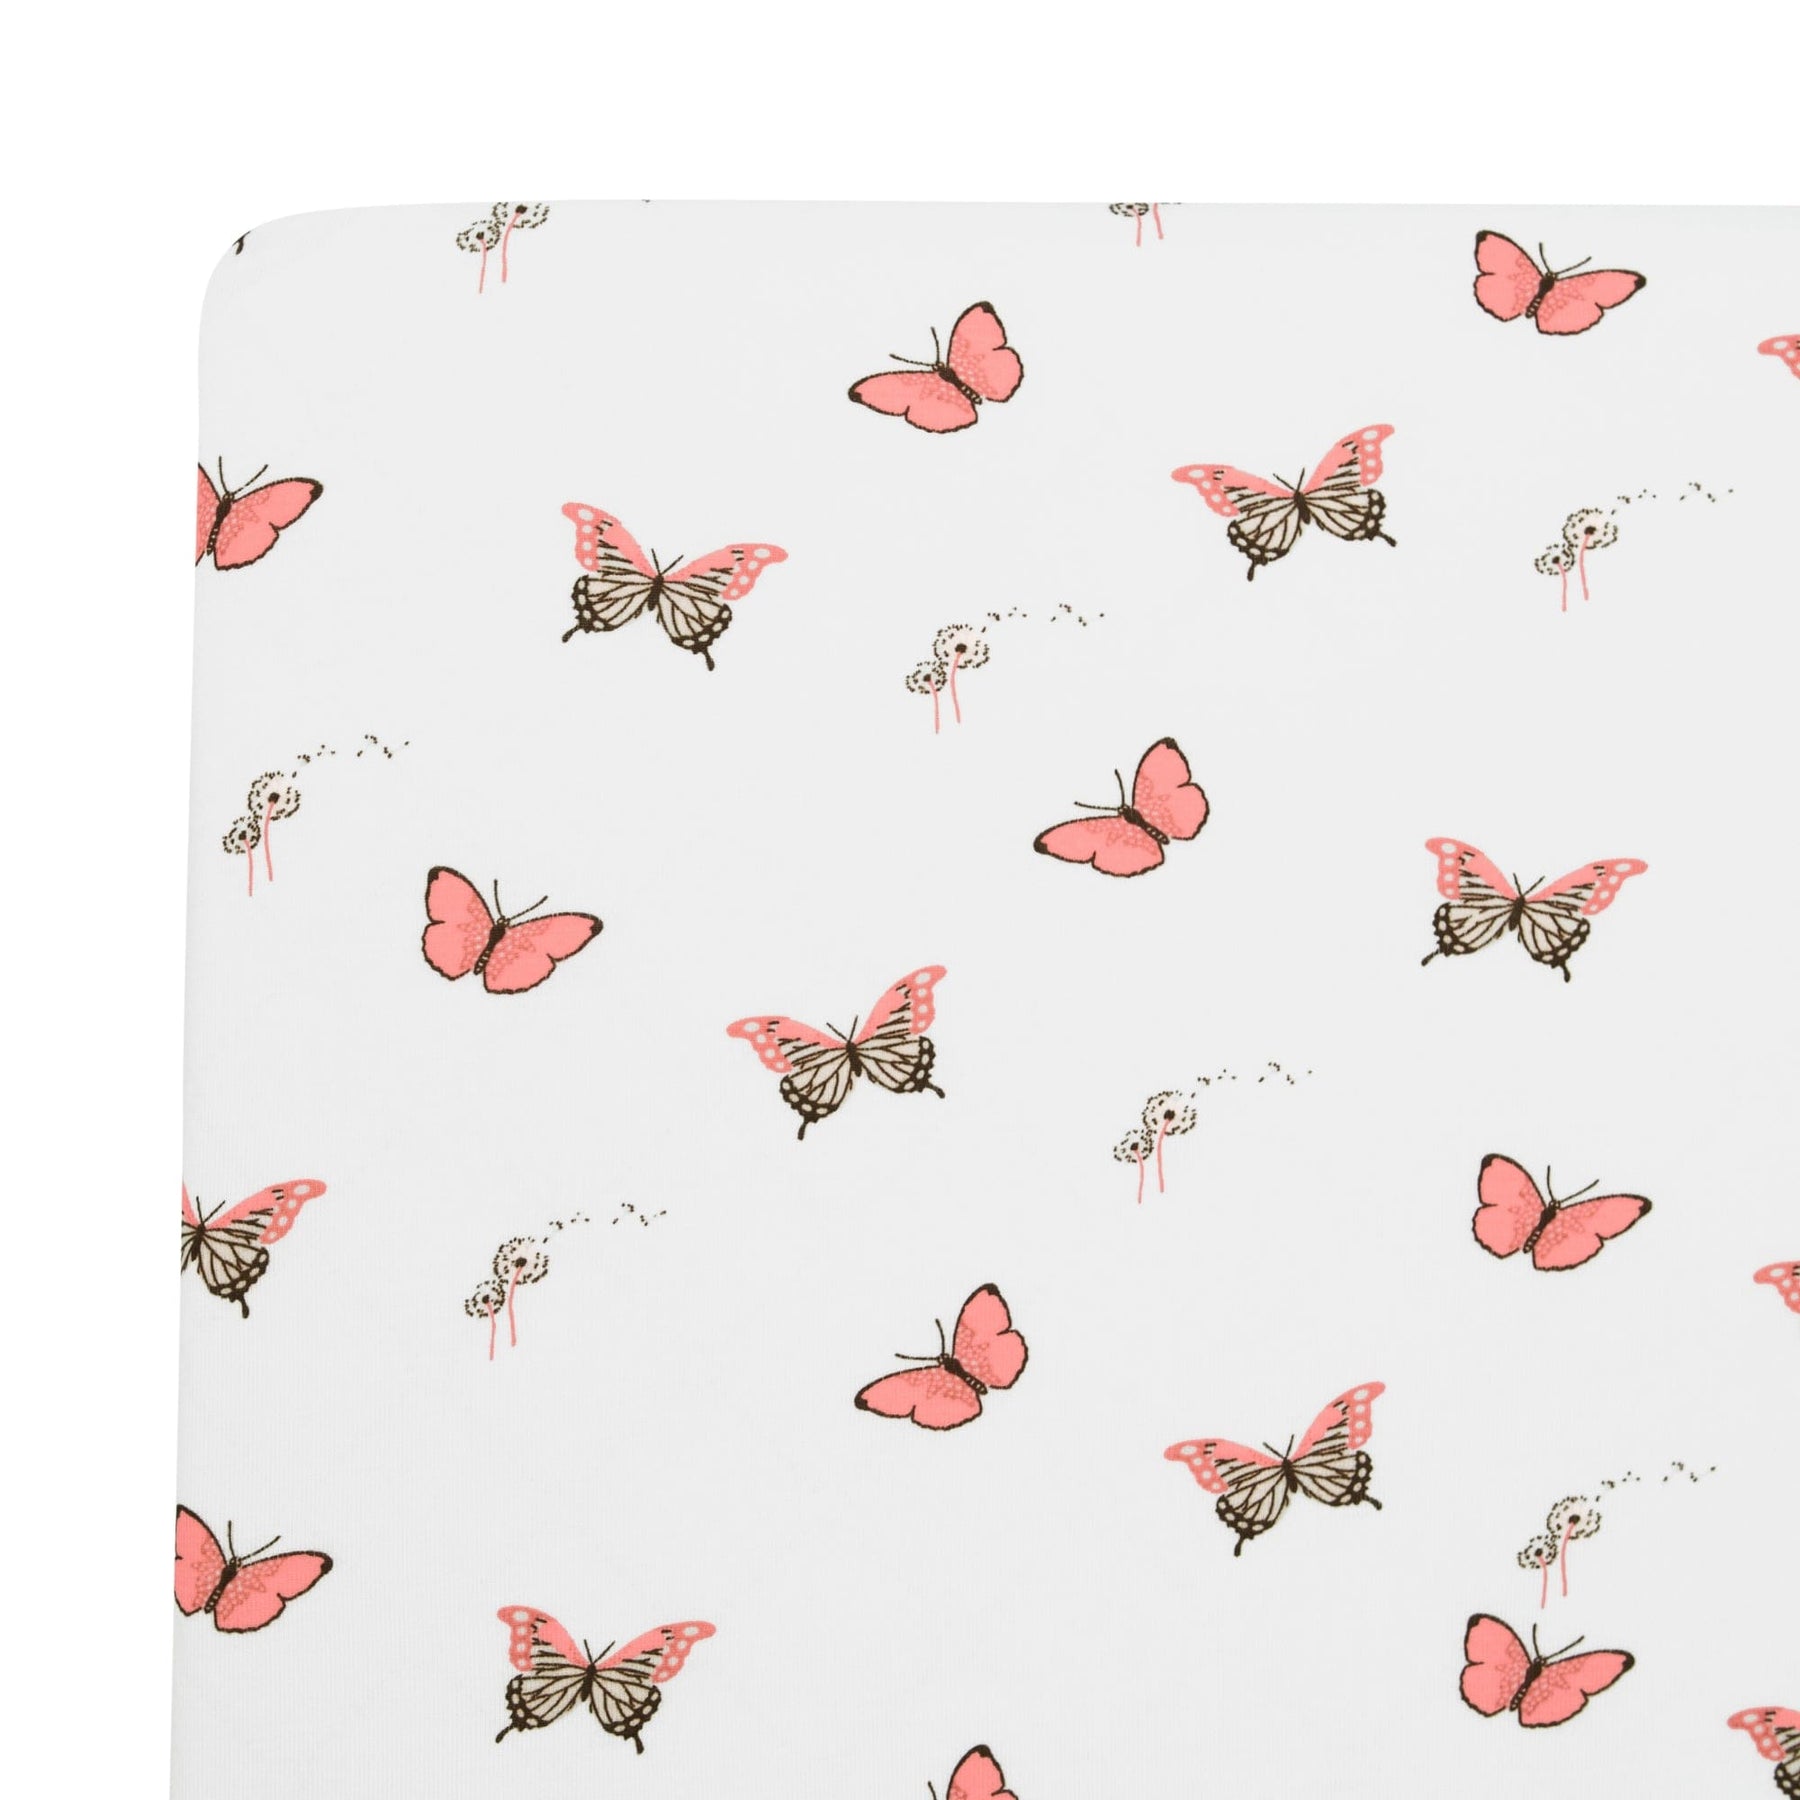 Kyte BABY Crib Sheet Butterfly / Twin Sheet Twin Sheet in Butterfly